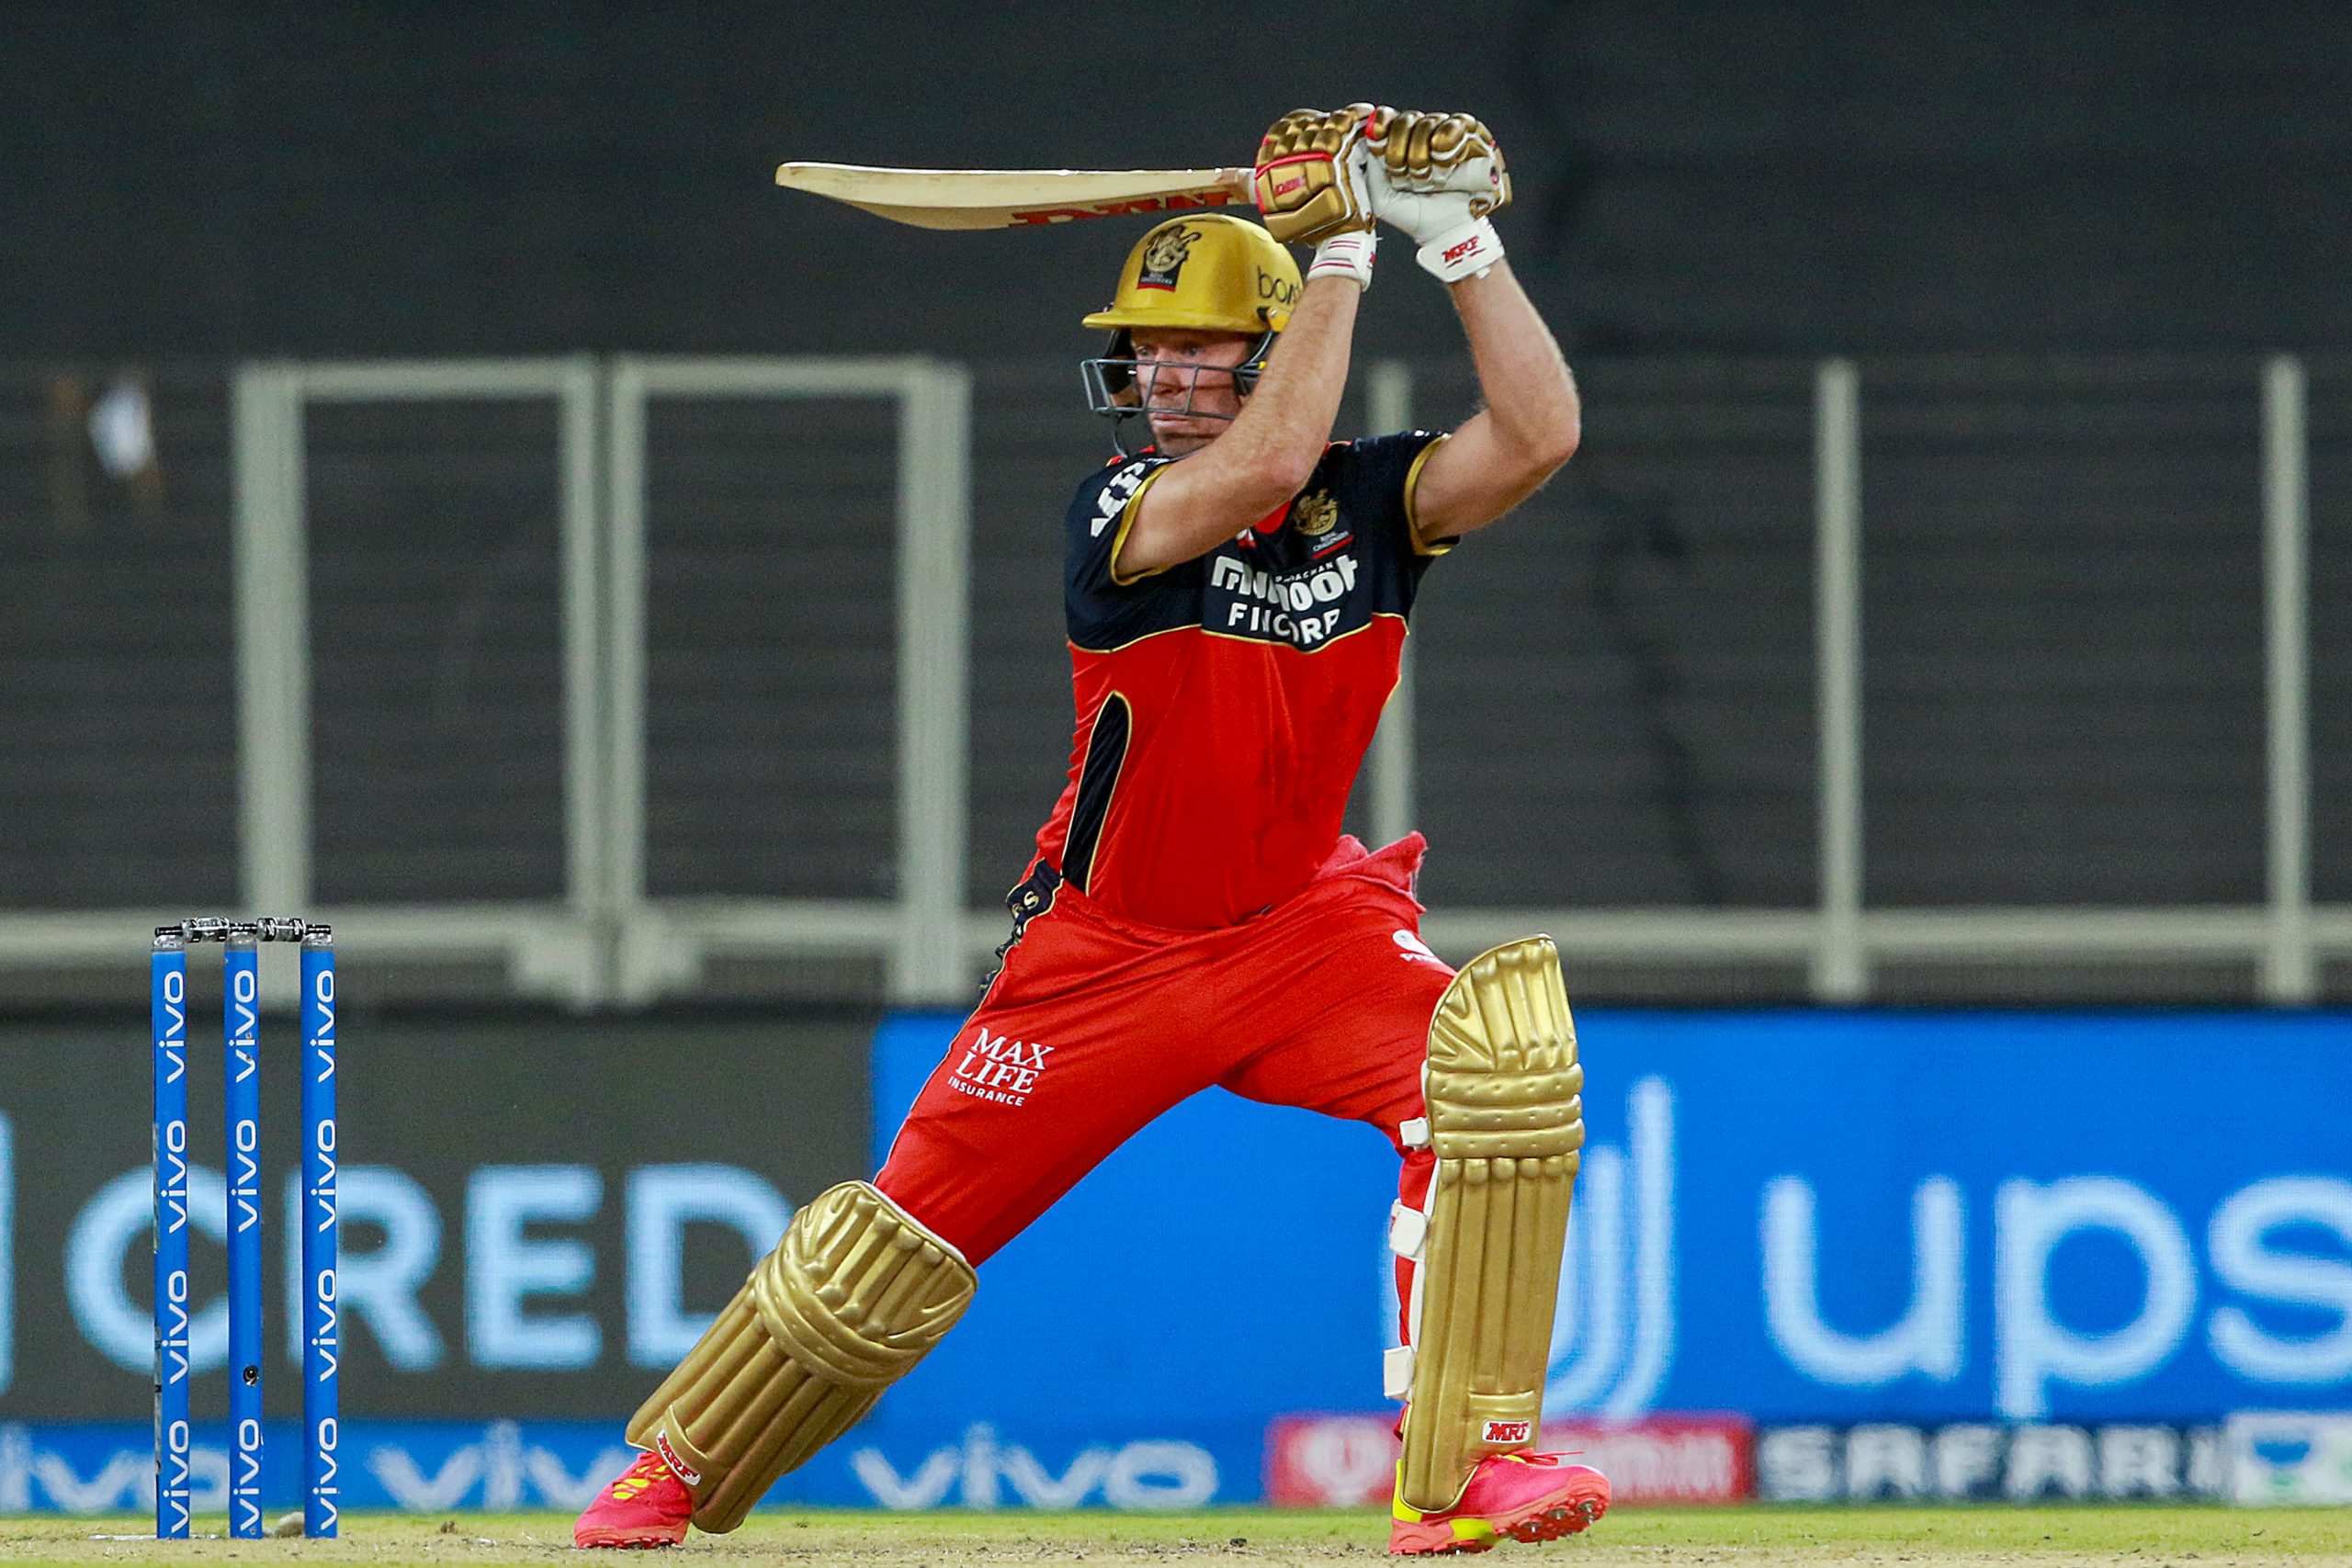 AB de Villiers back in RCB’s red? Virat Kohli spills the beans